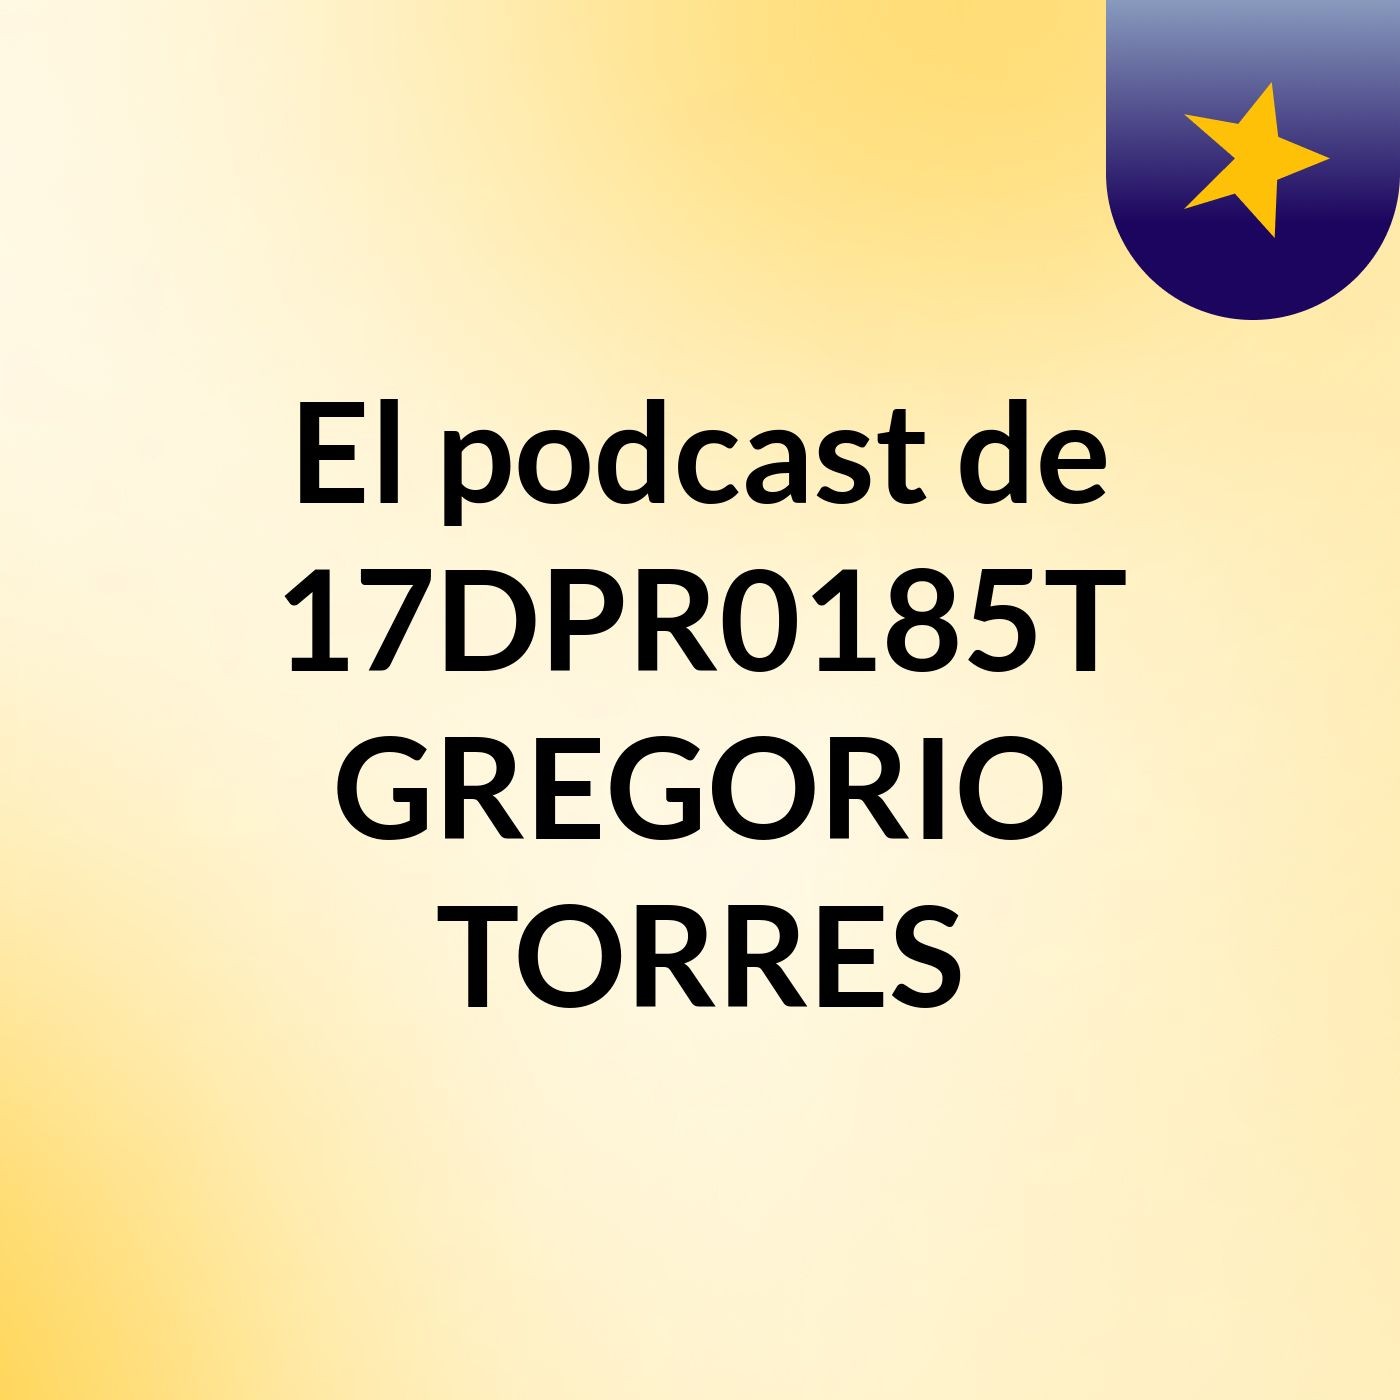 El podcast de 17DPR0185T GREGORIO TORRES